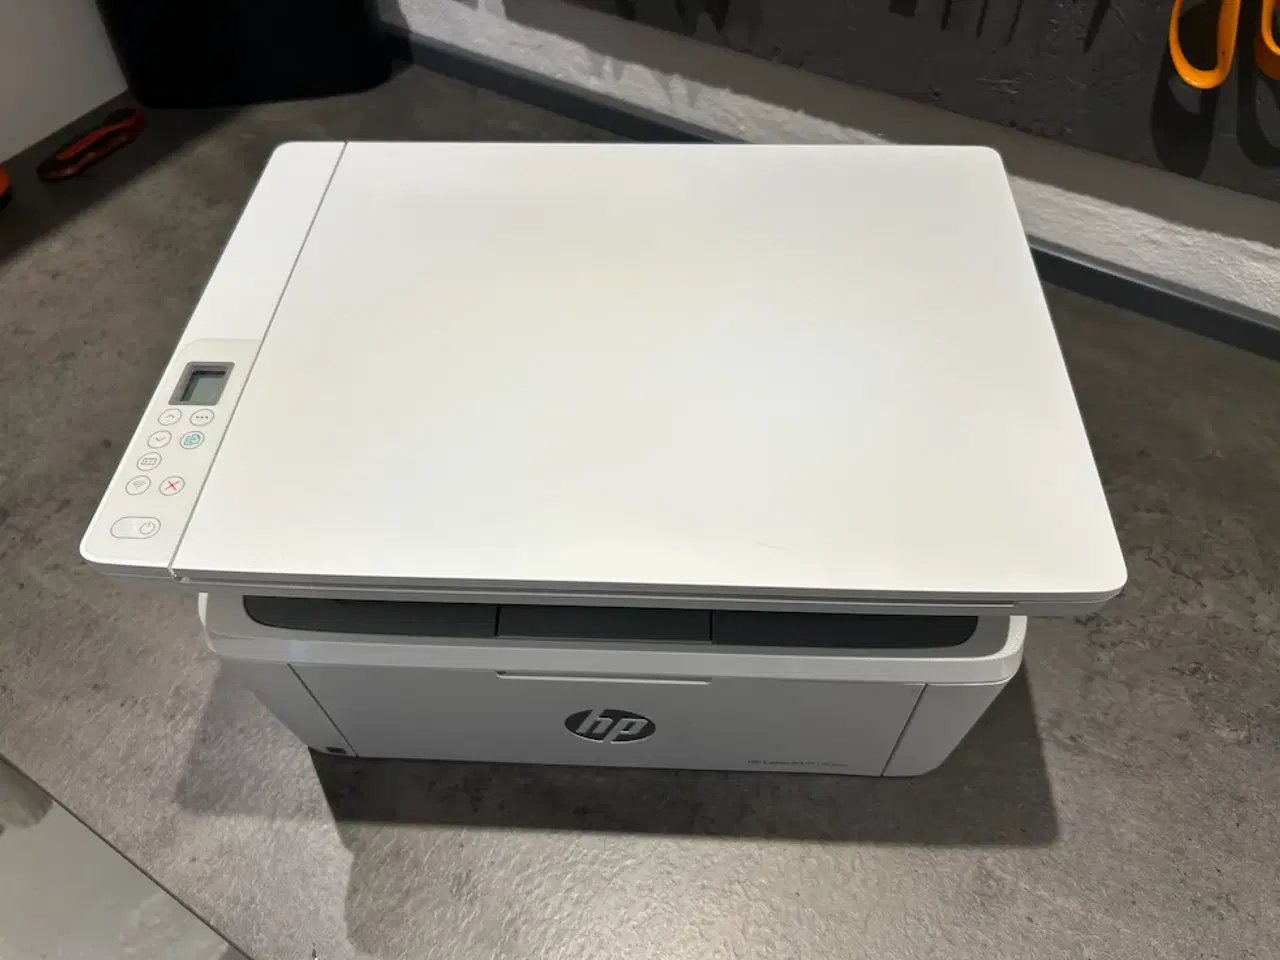 Billede 1 - Ny HP laserprinter med scanner